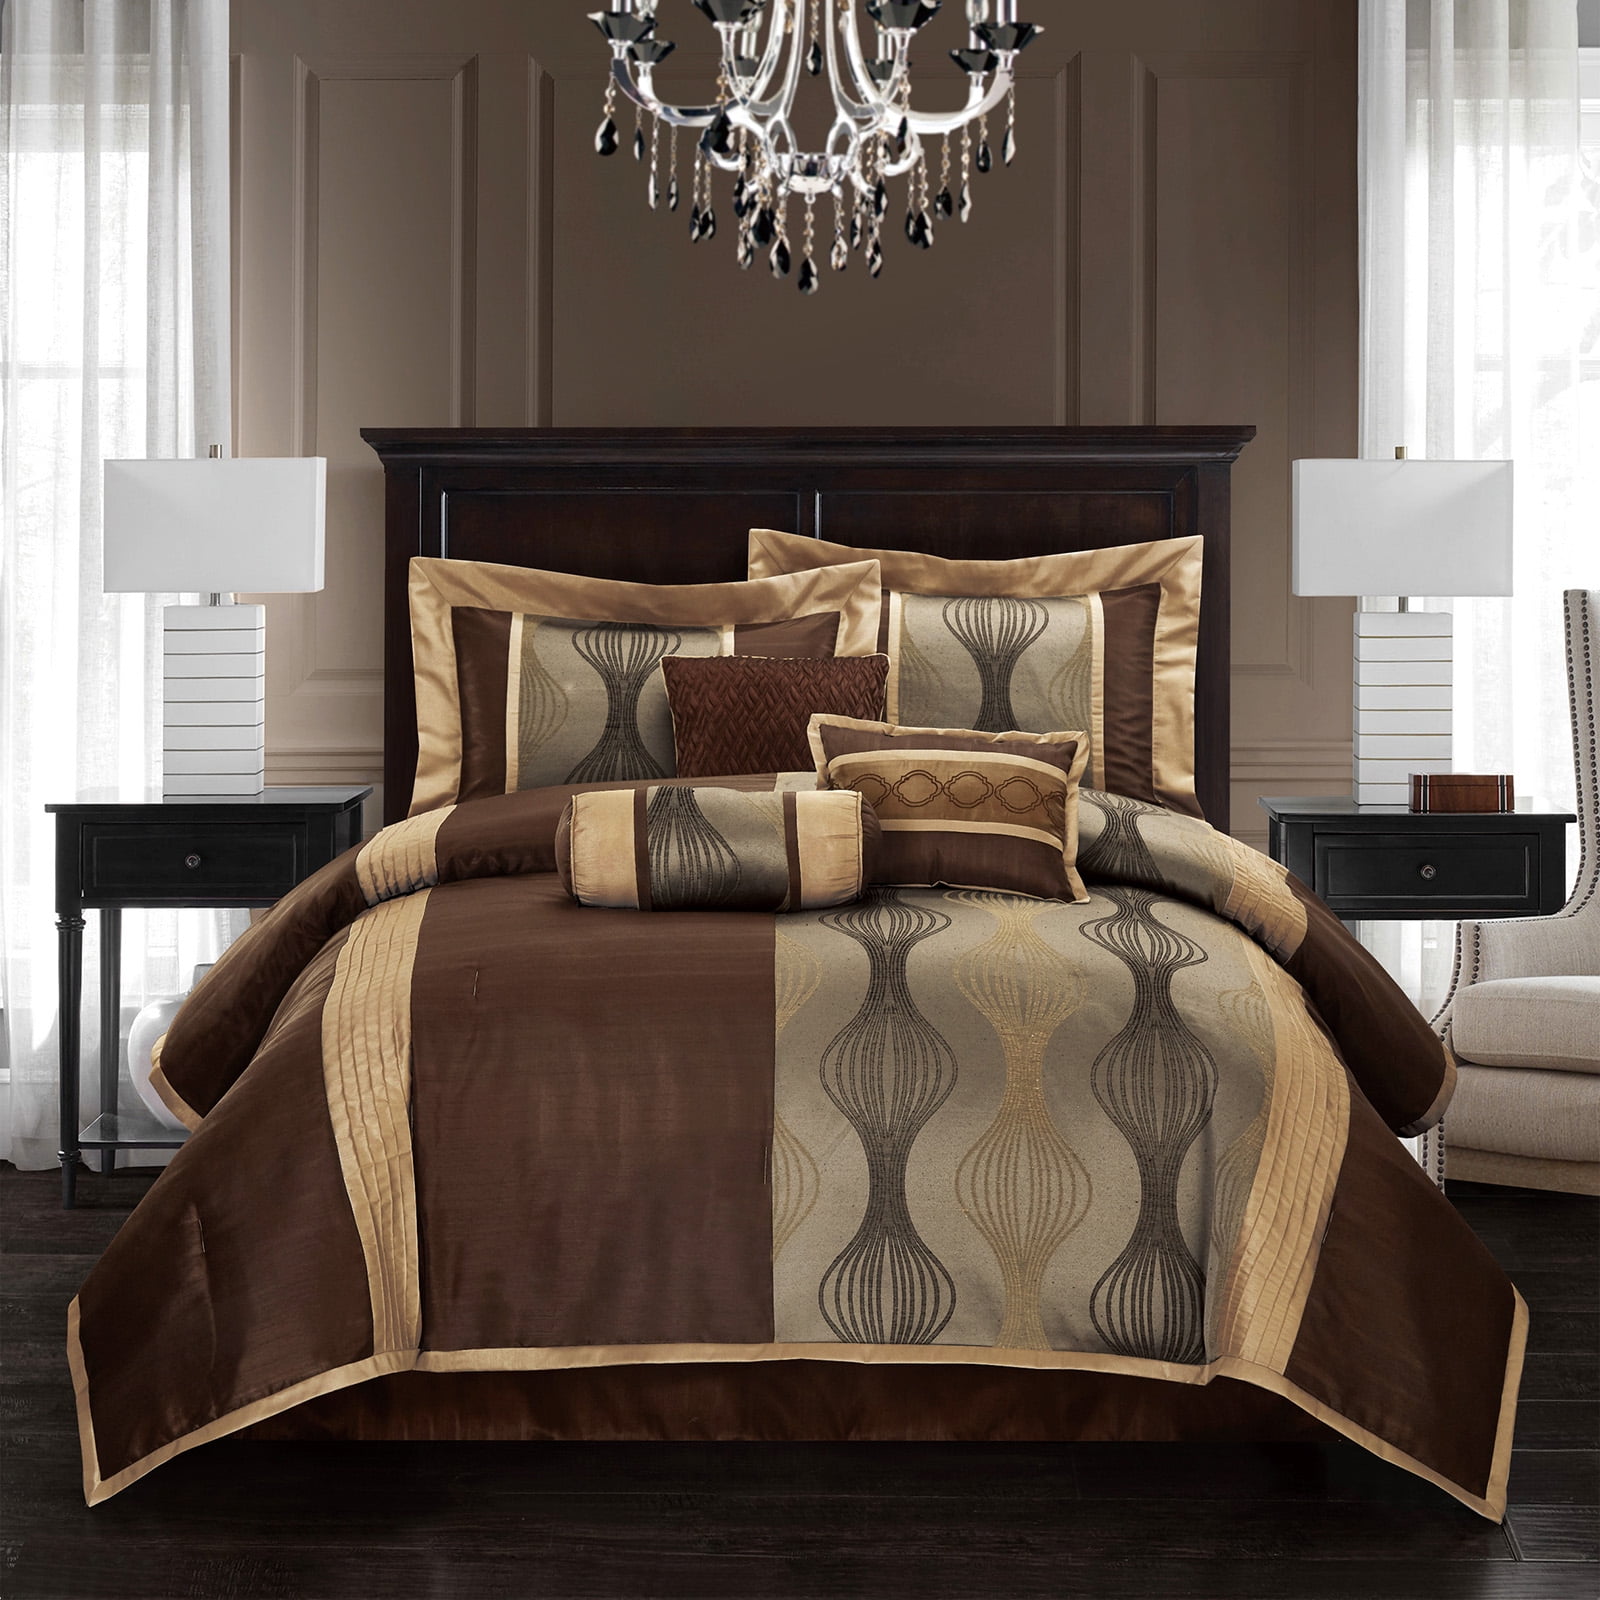 Lanco Brown Comforter Set , King Size , 7 Pieces Fashion Jacquard Bedding  Set